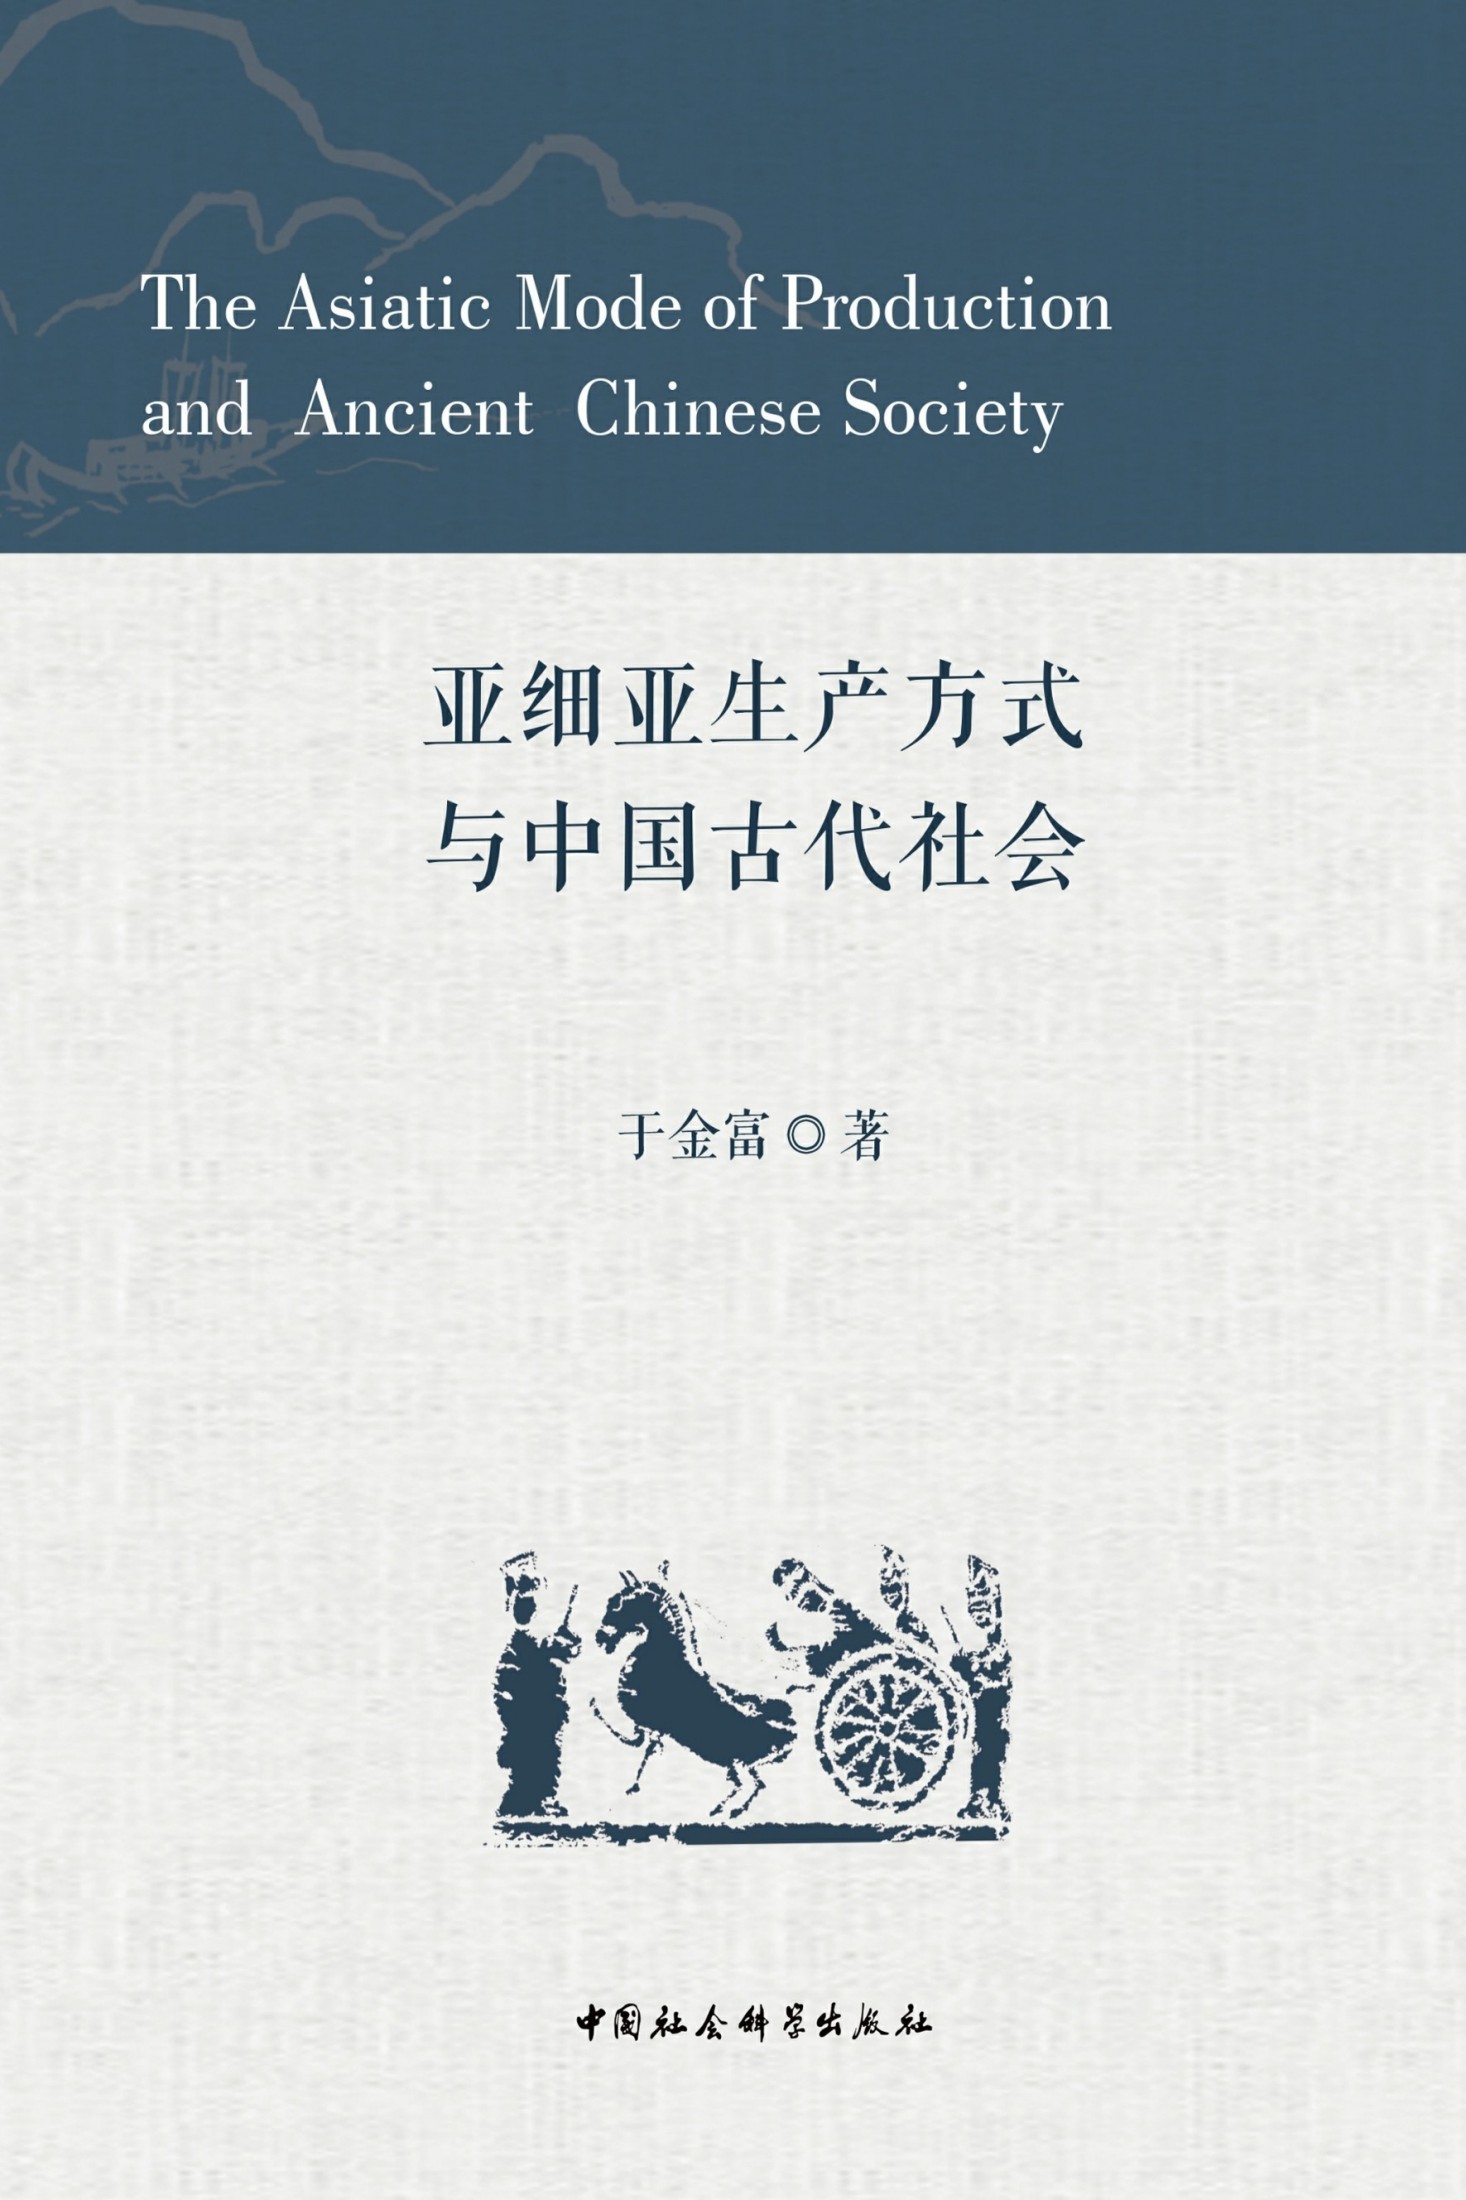 亚细亚生产方式与中国古代社会